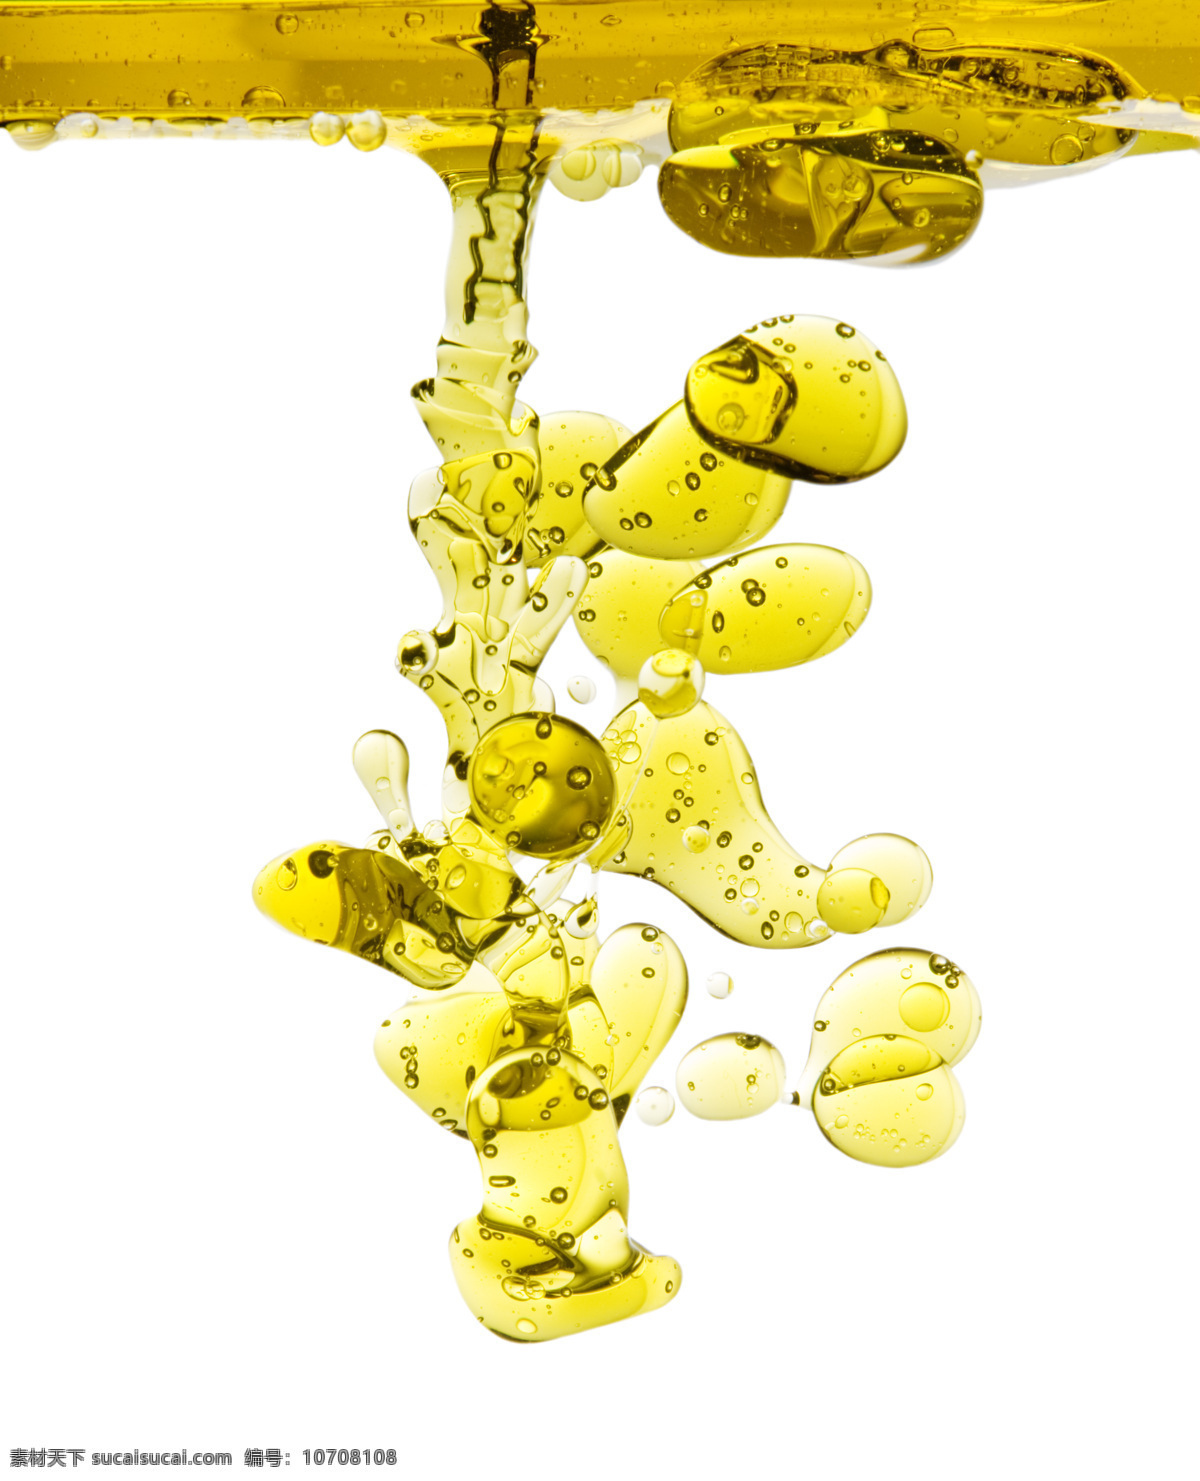 黄色 液体 创意图片 高清图片 精美图片 明 水泡 印刷适用